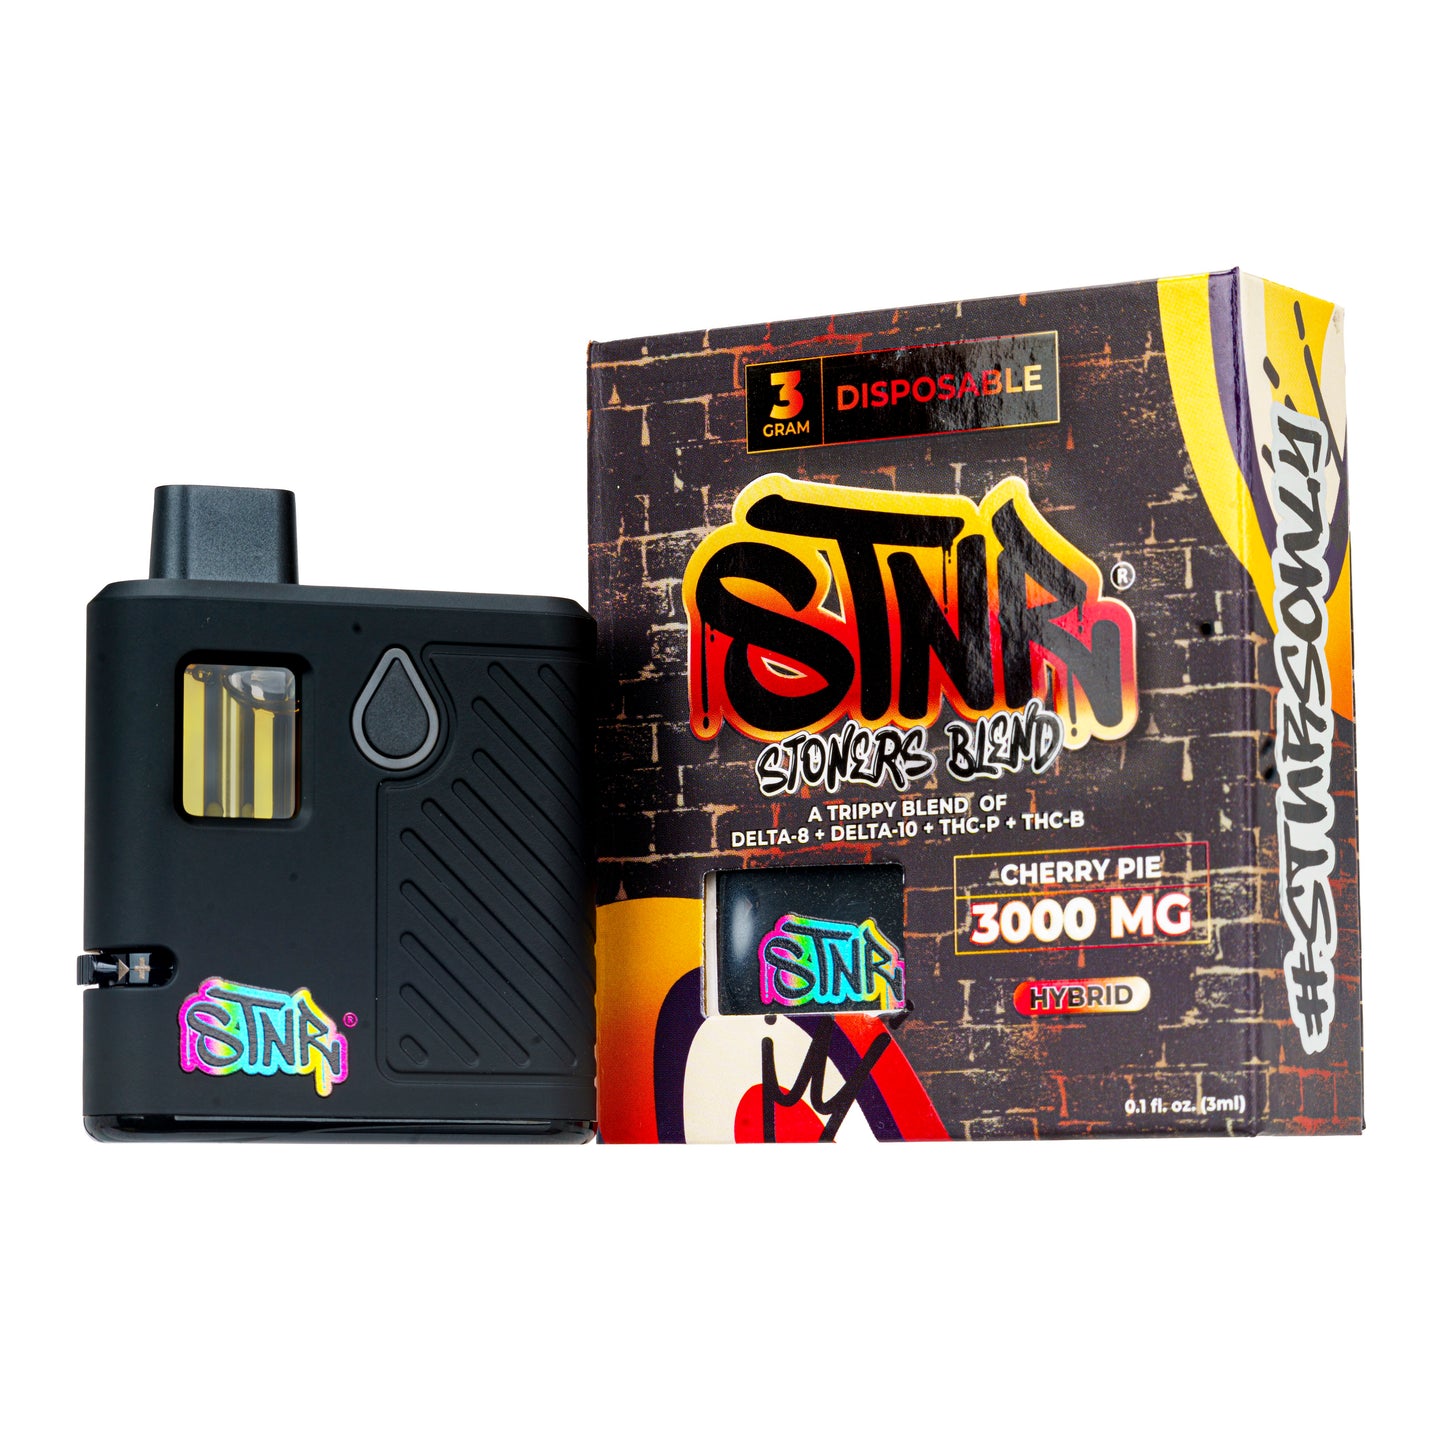 STNR XXL 3Gram High Potency Blend Disposable Vape